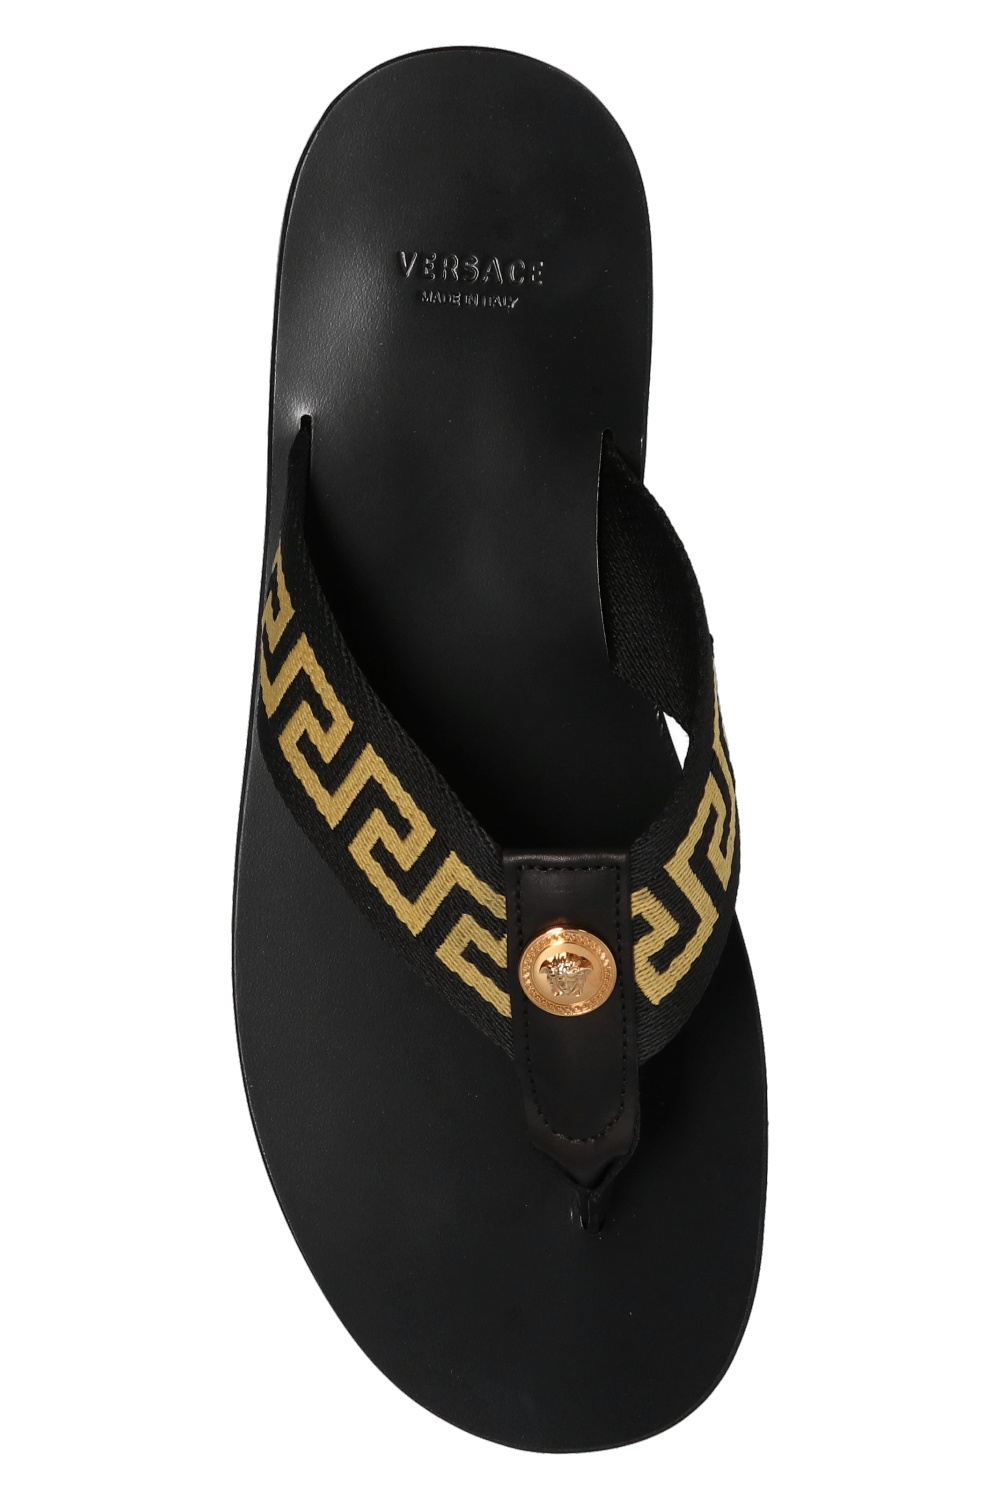 Versace Leather flip-flops